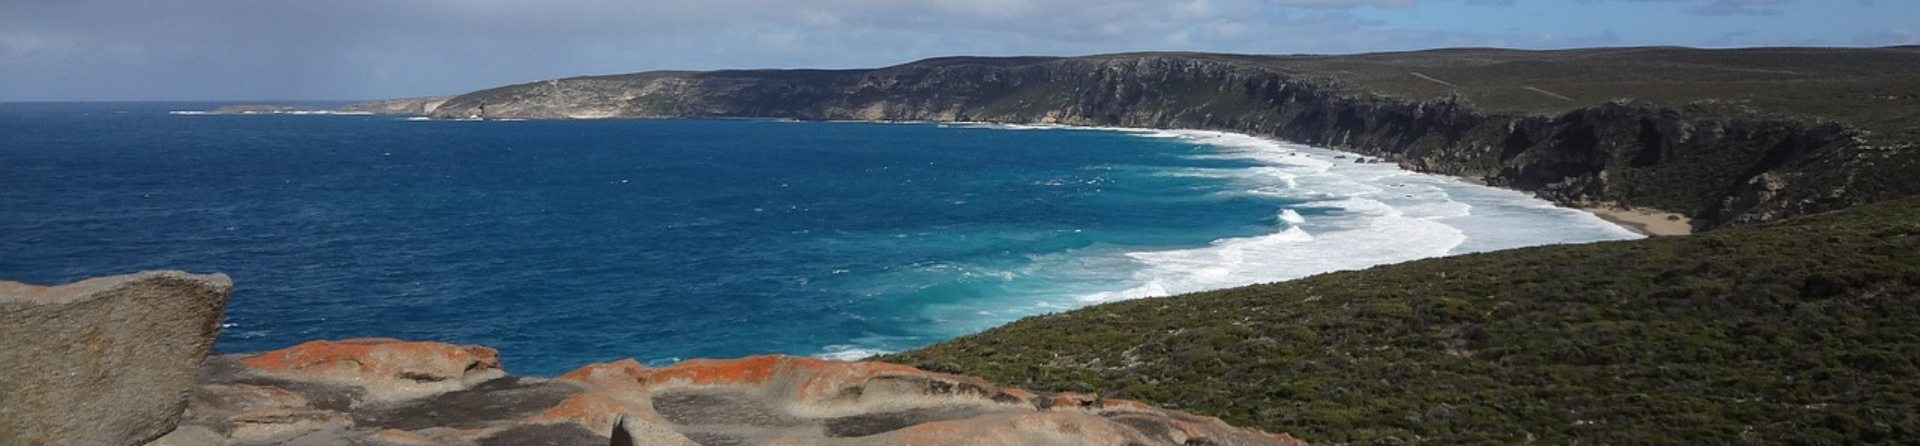 How did Kangaroo Island get its name?